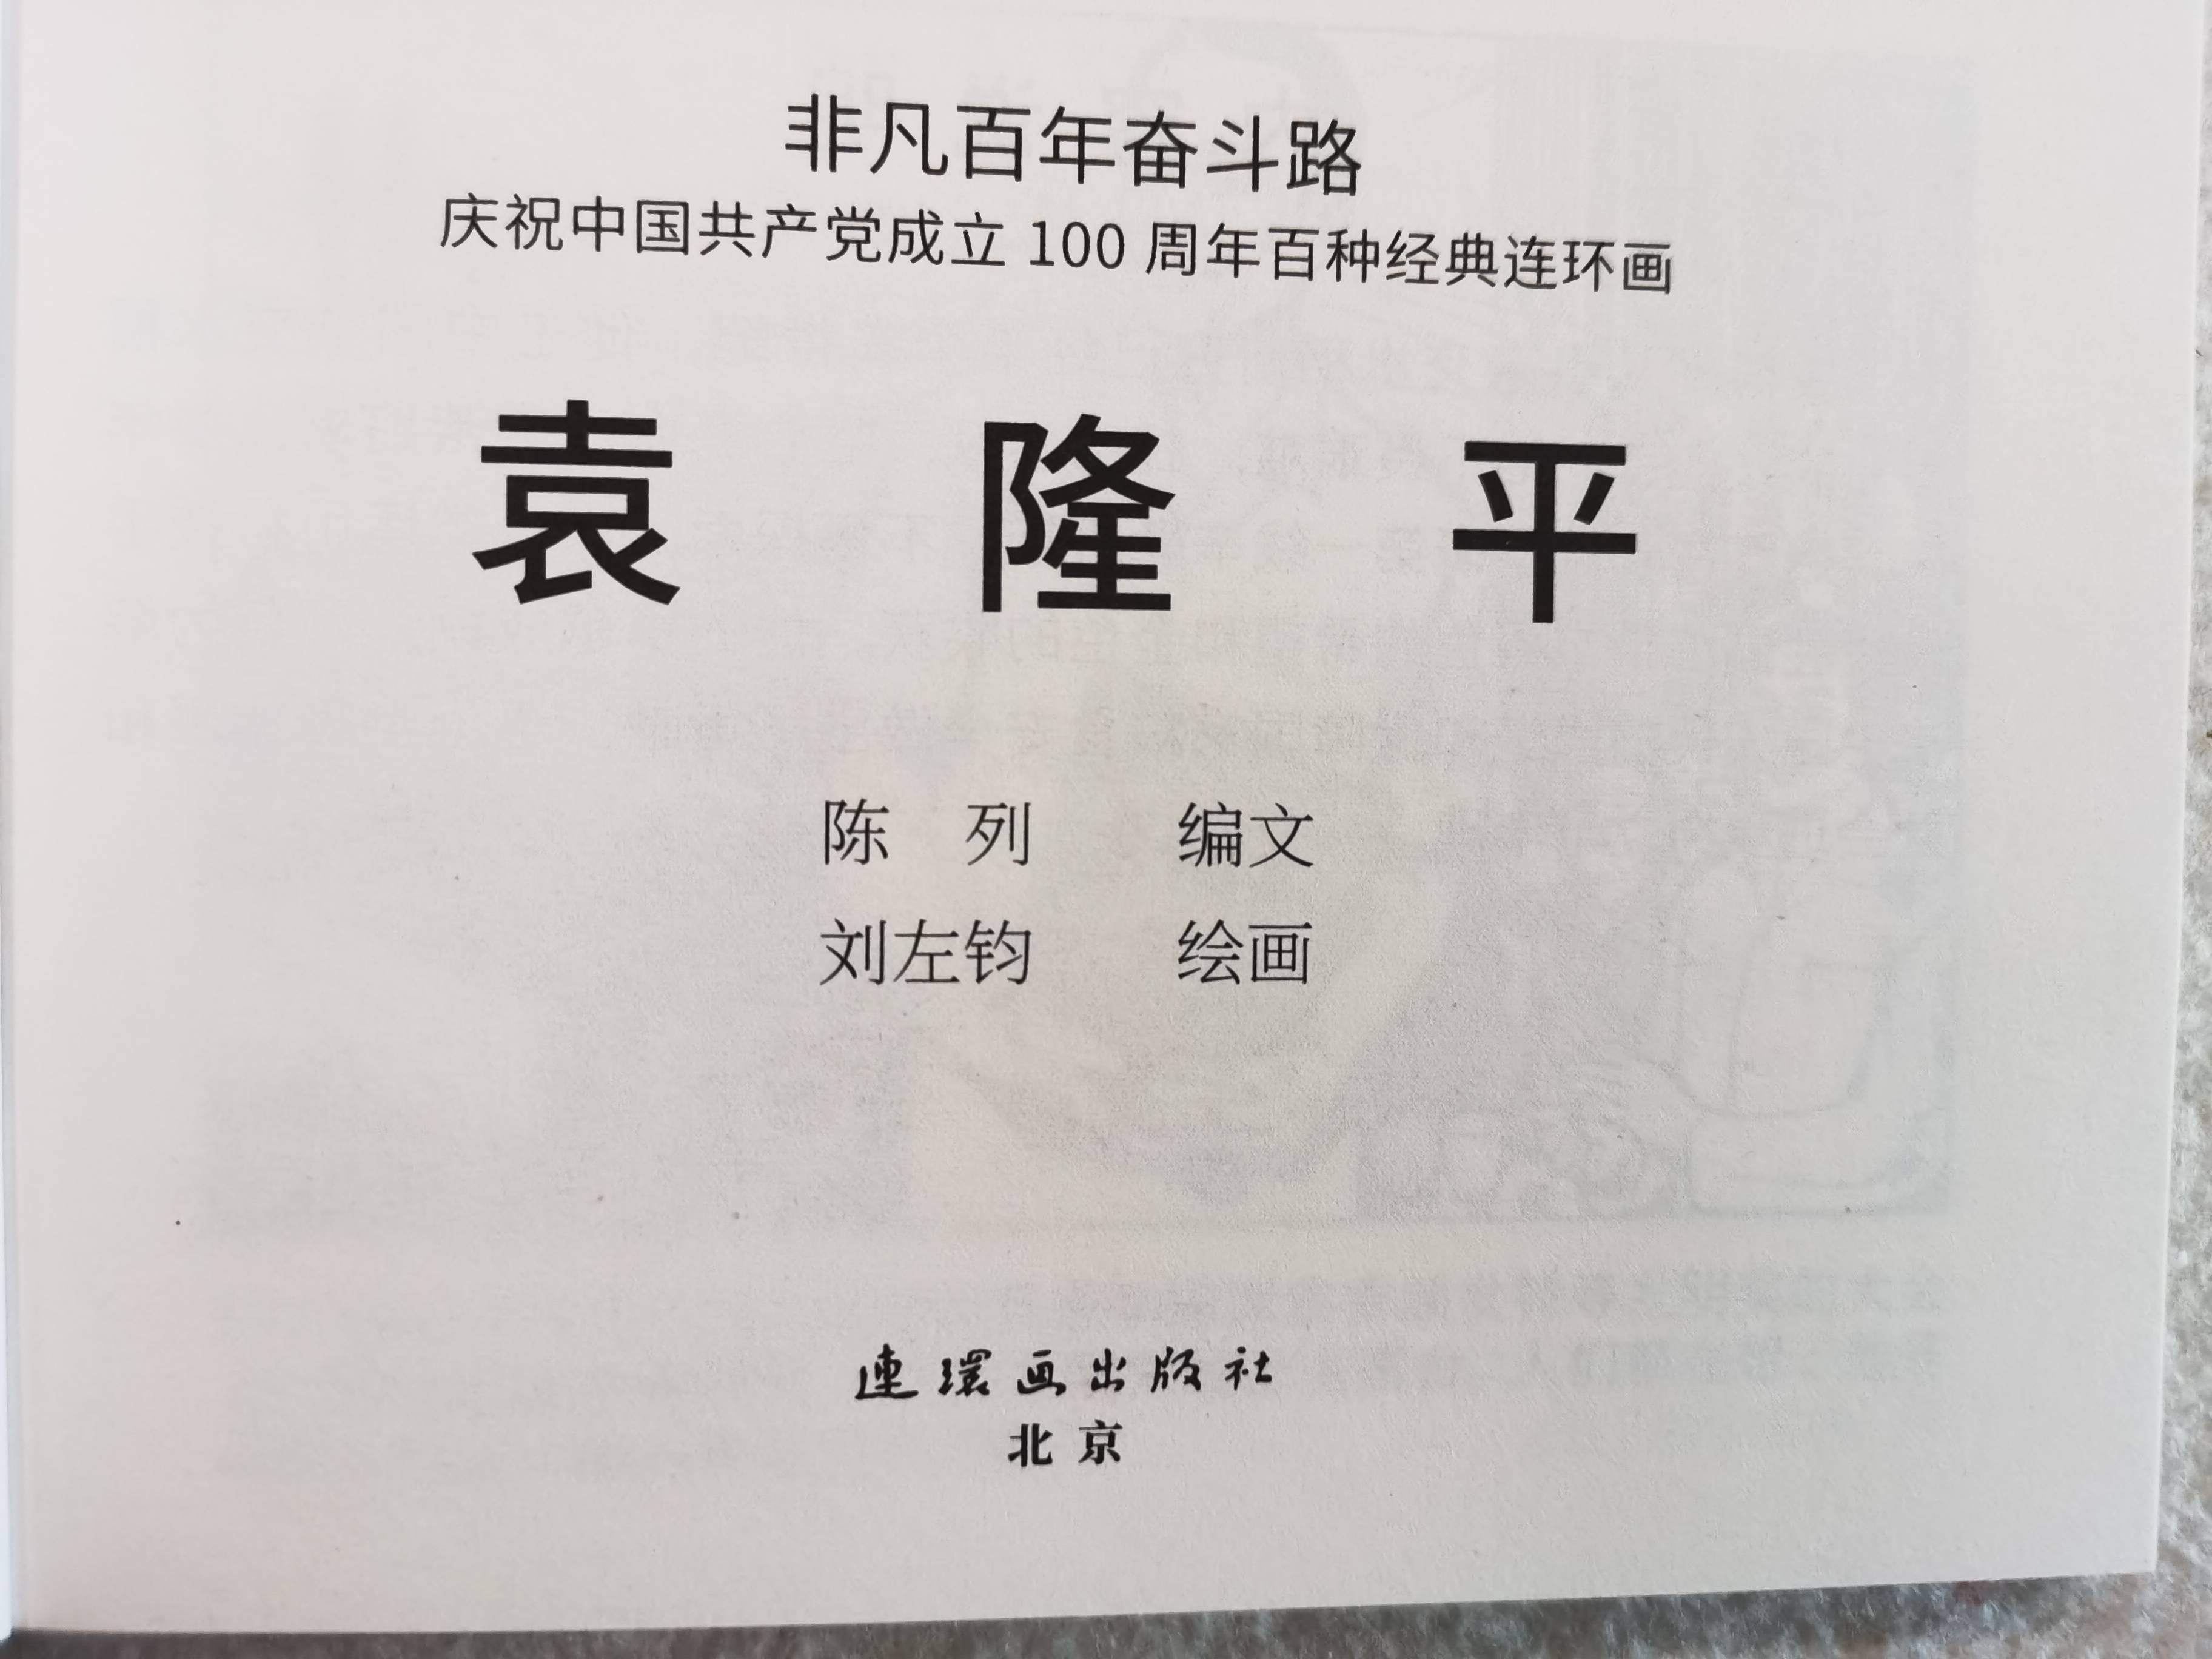 刘左钧 用一本连环画记录袁隆平院士与杂交水稻的故事